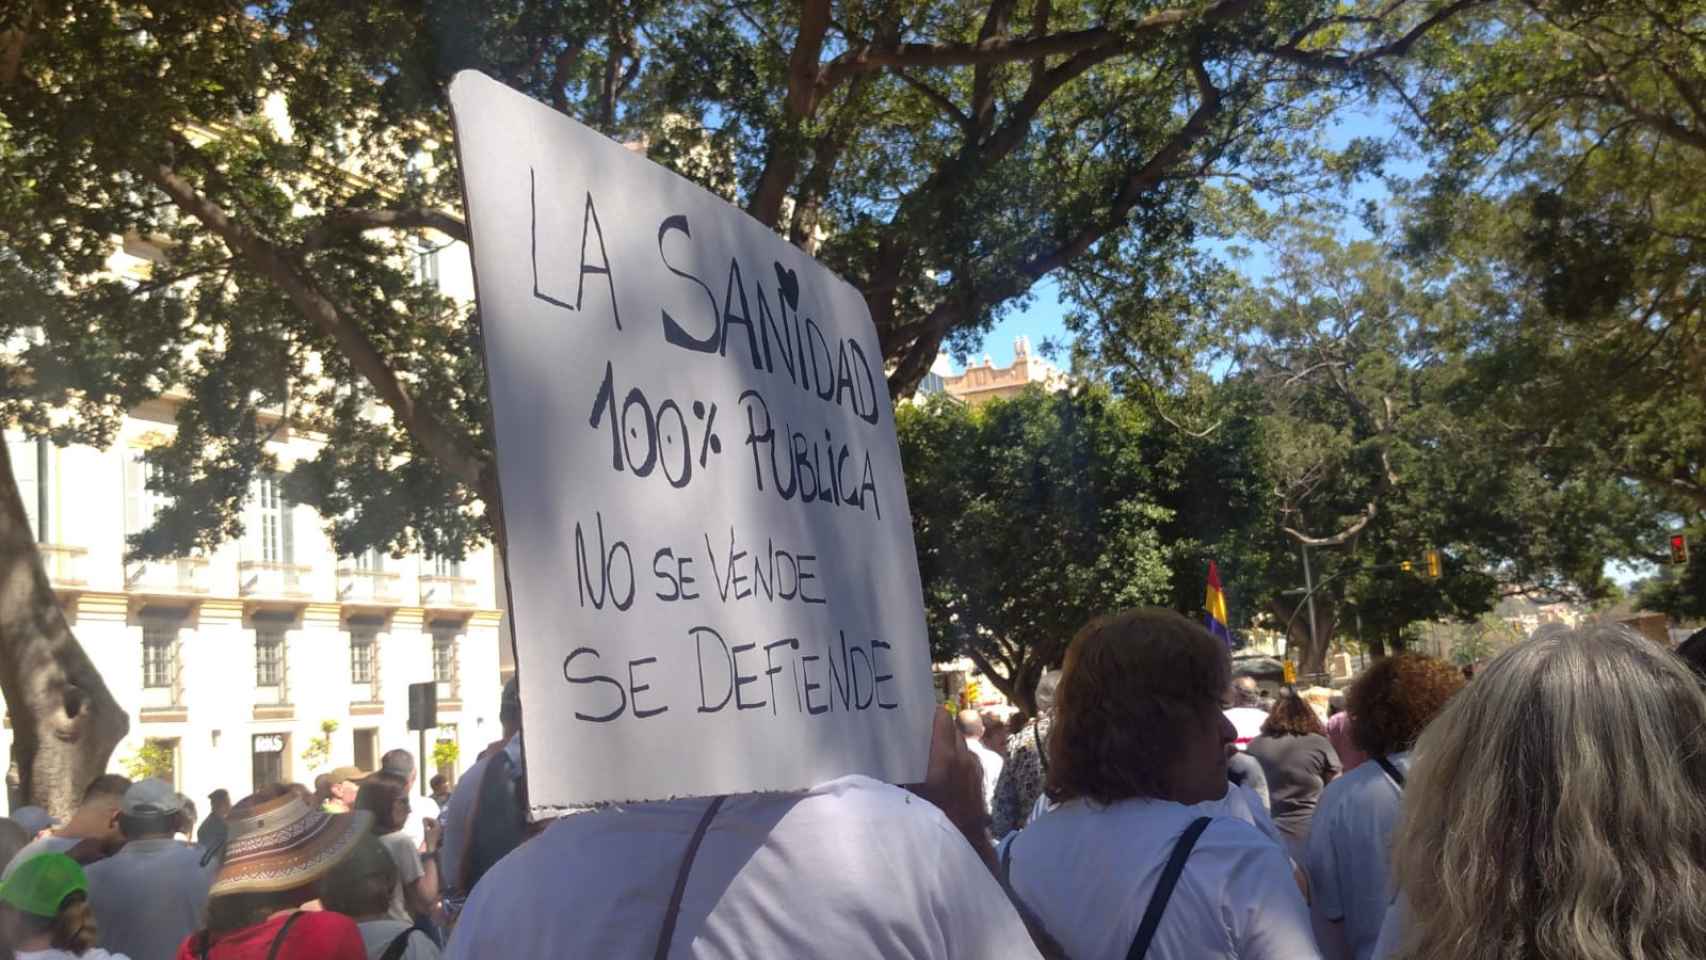 Sanidad Pública Málaga